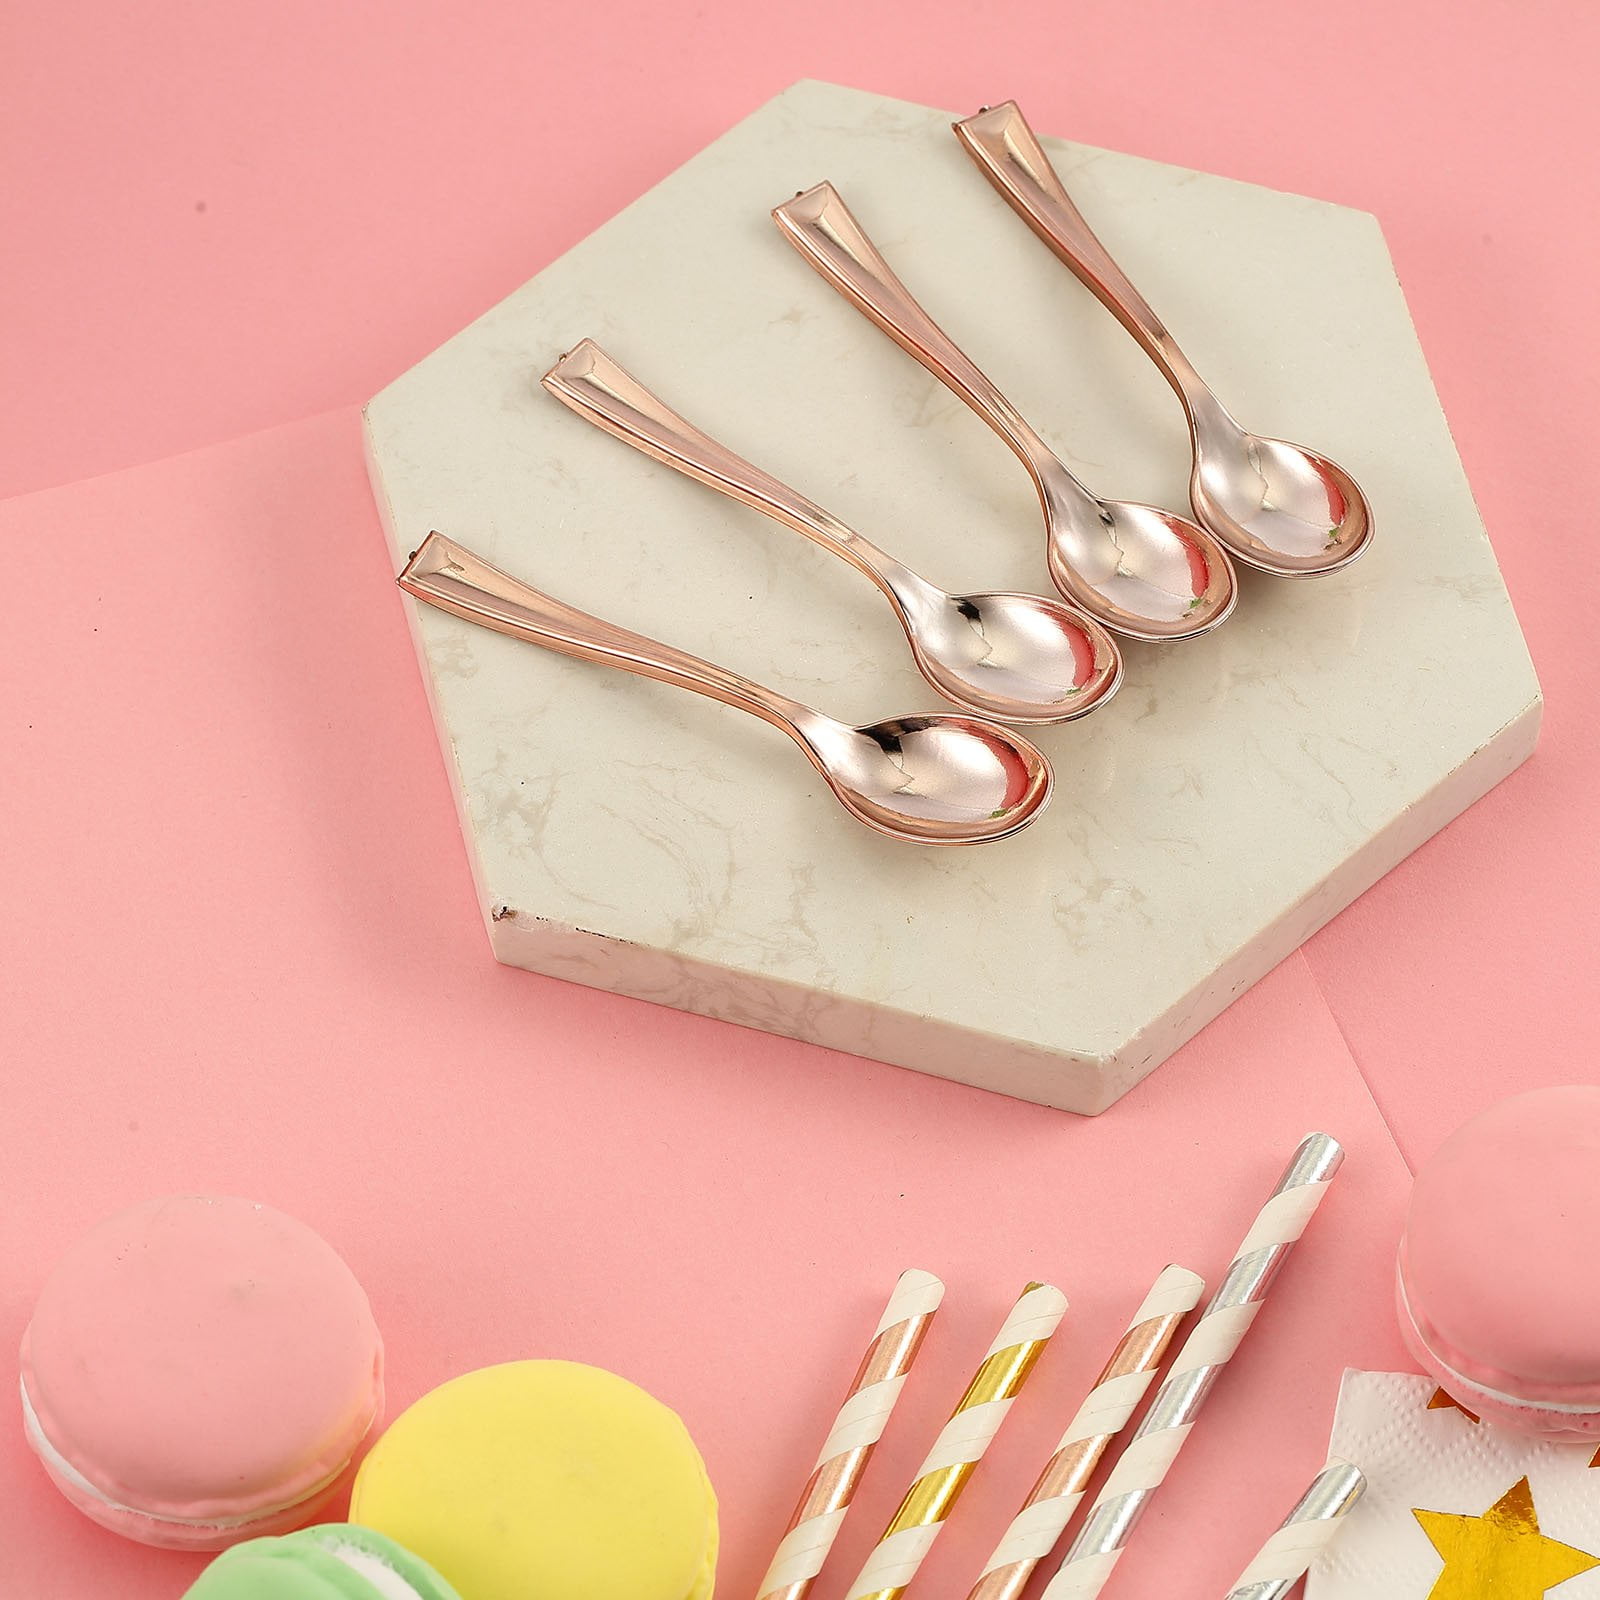 100 Pieces Clear Plastic Tea Spoons Ice Cream Spoons Coffee Spoons Mixing Spoon Set luzen